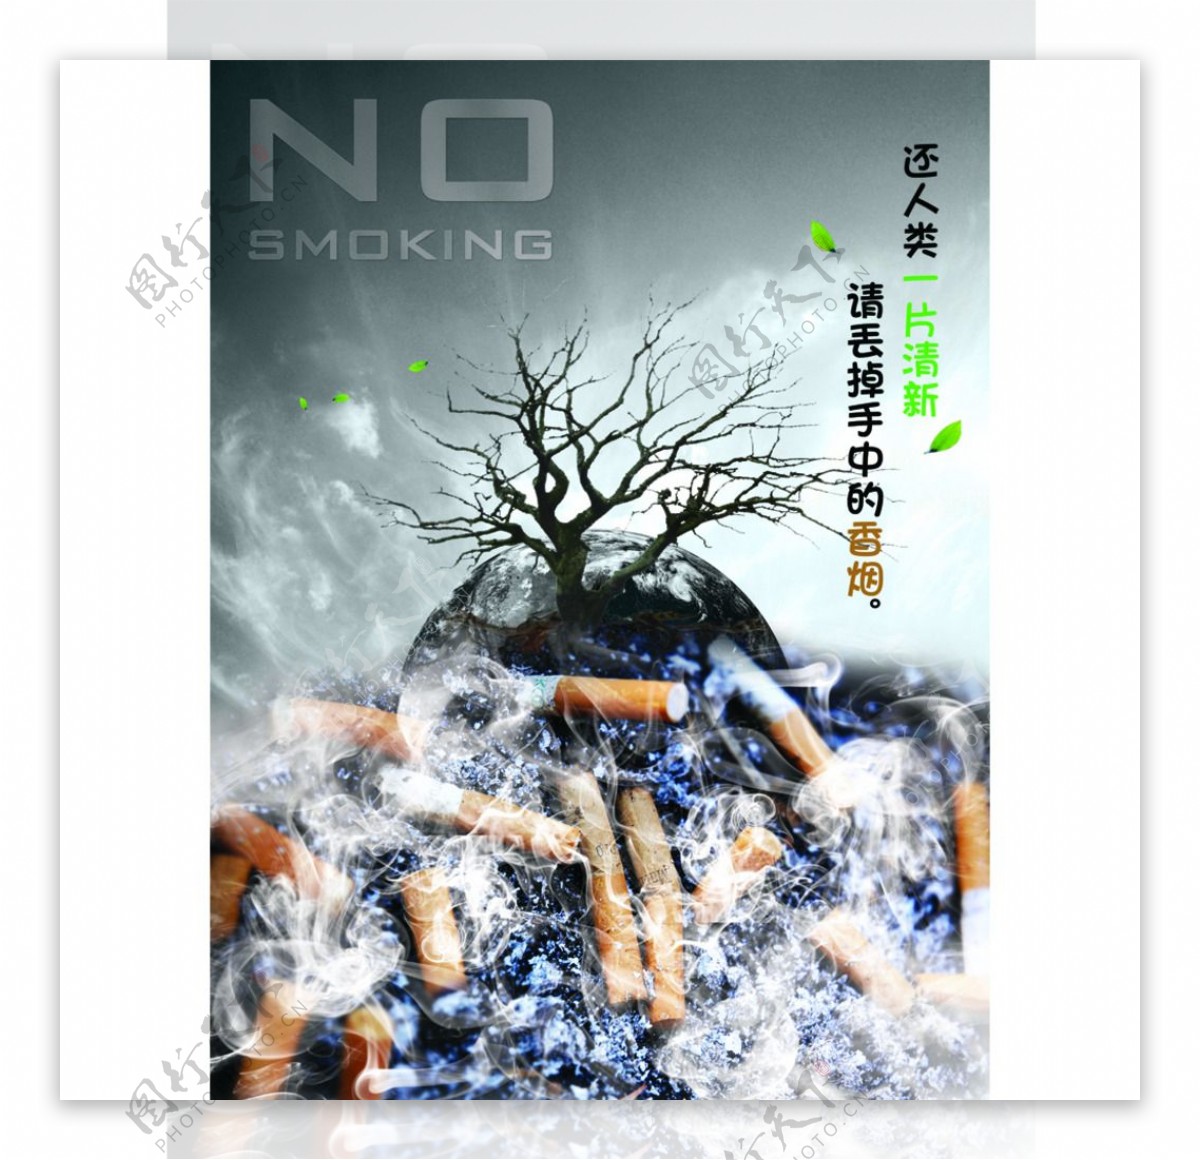 禁止吸烟公益海报设计图片